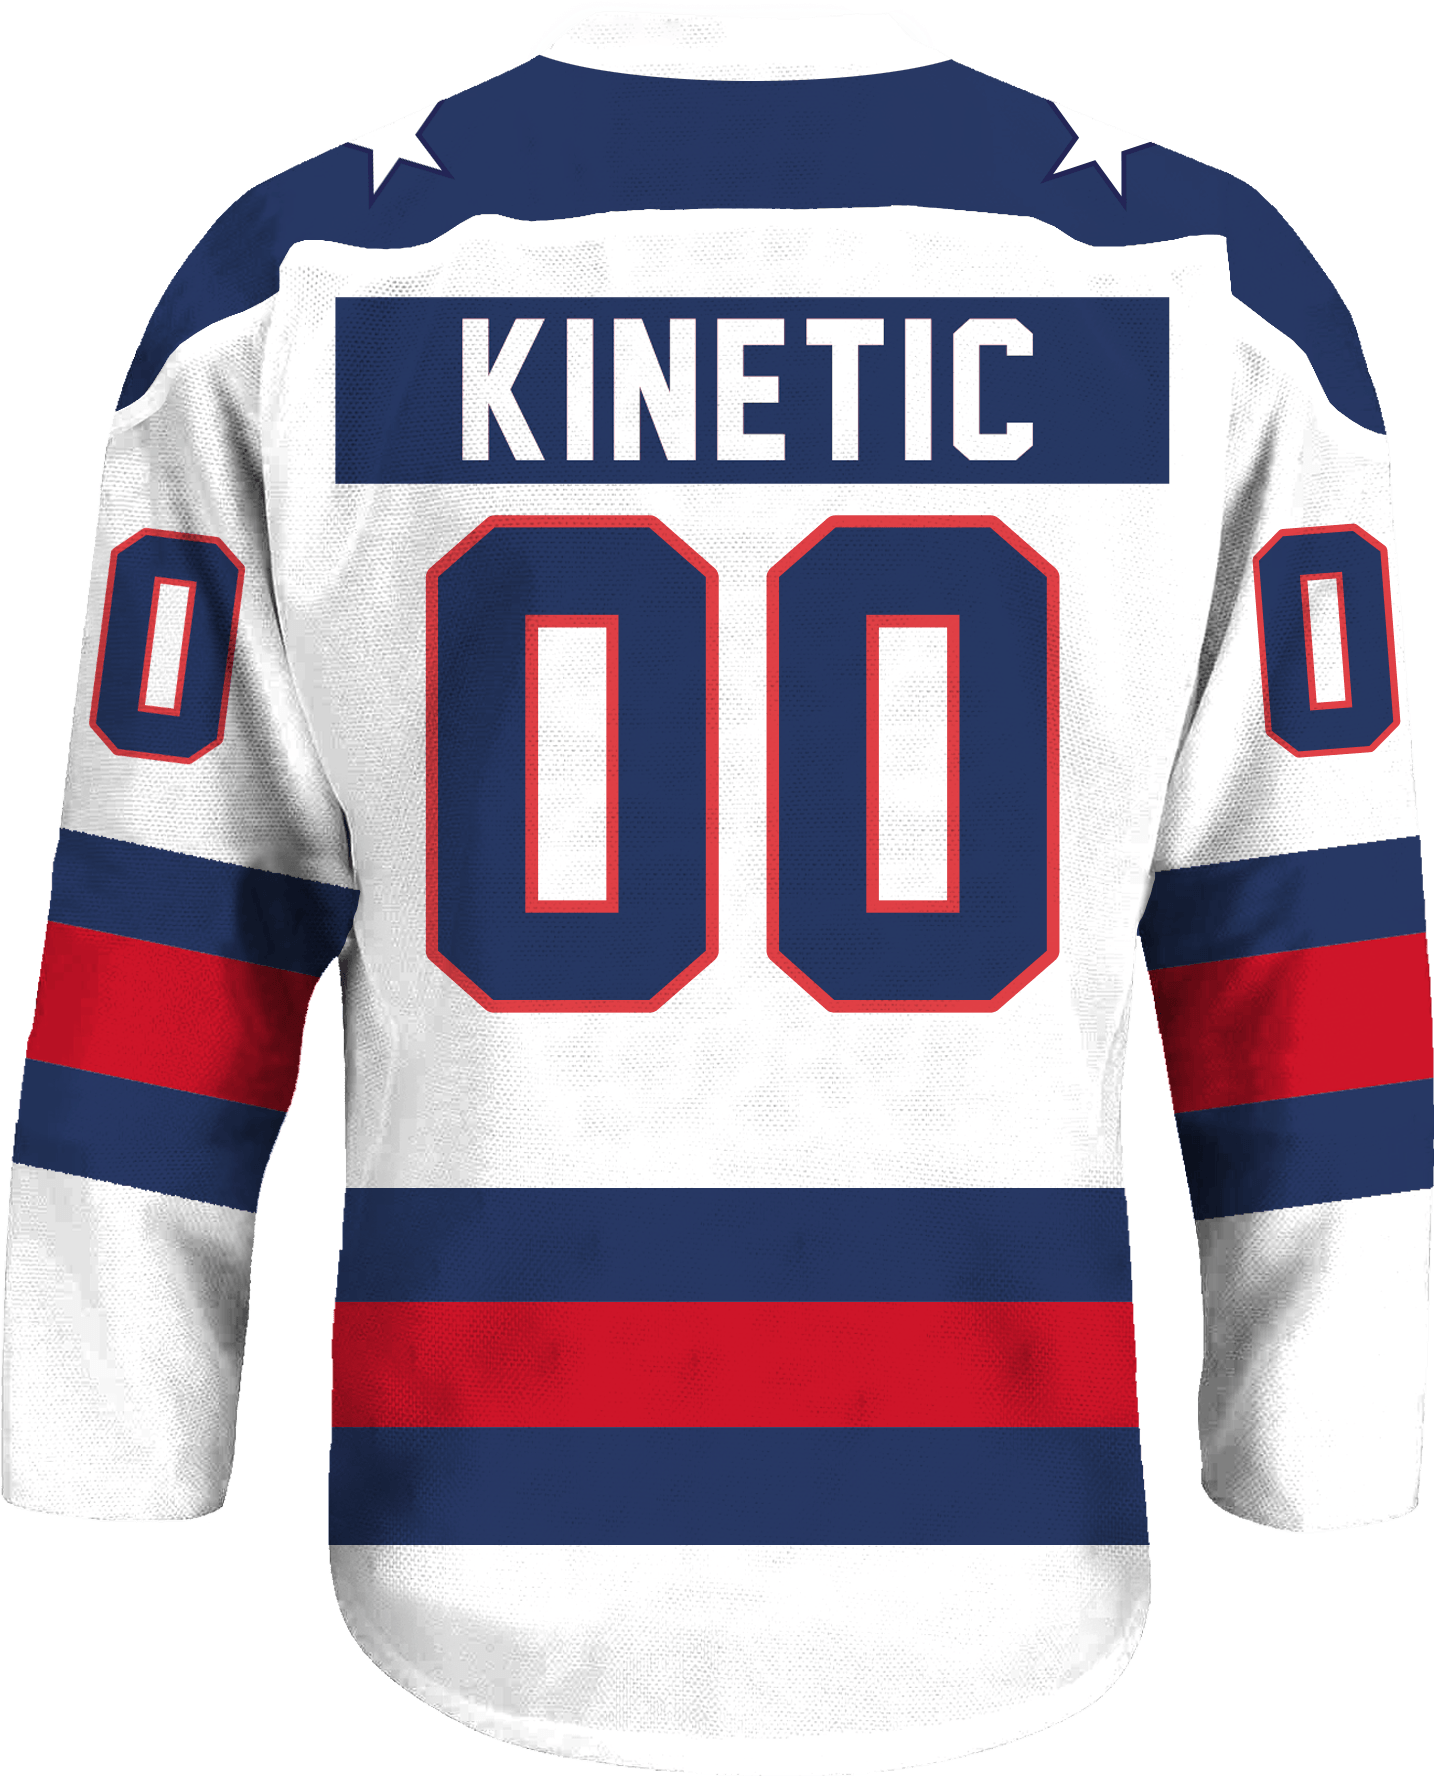 Delta Kappa Epsilon - Astro Hockey Jersey - Kinetic Society